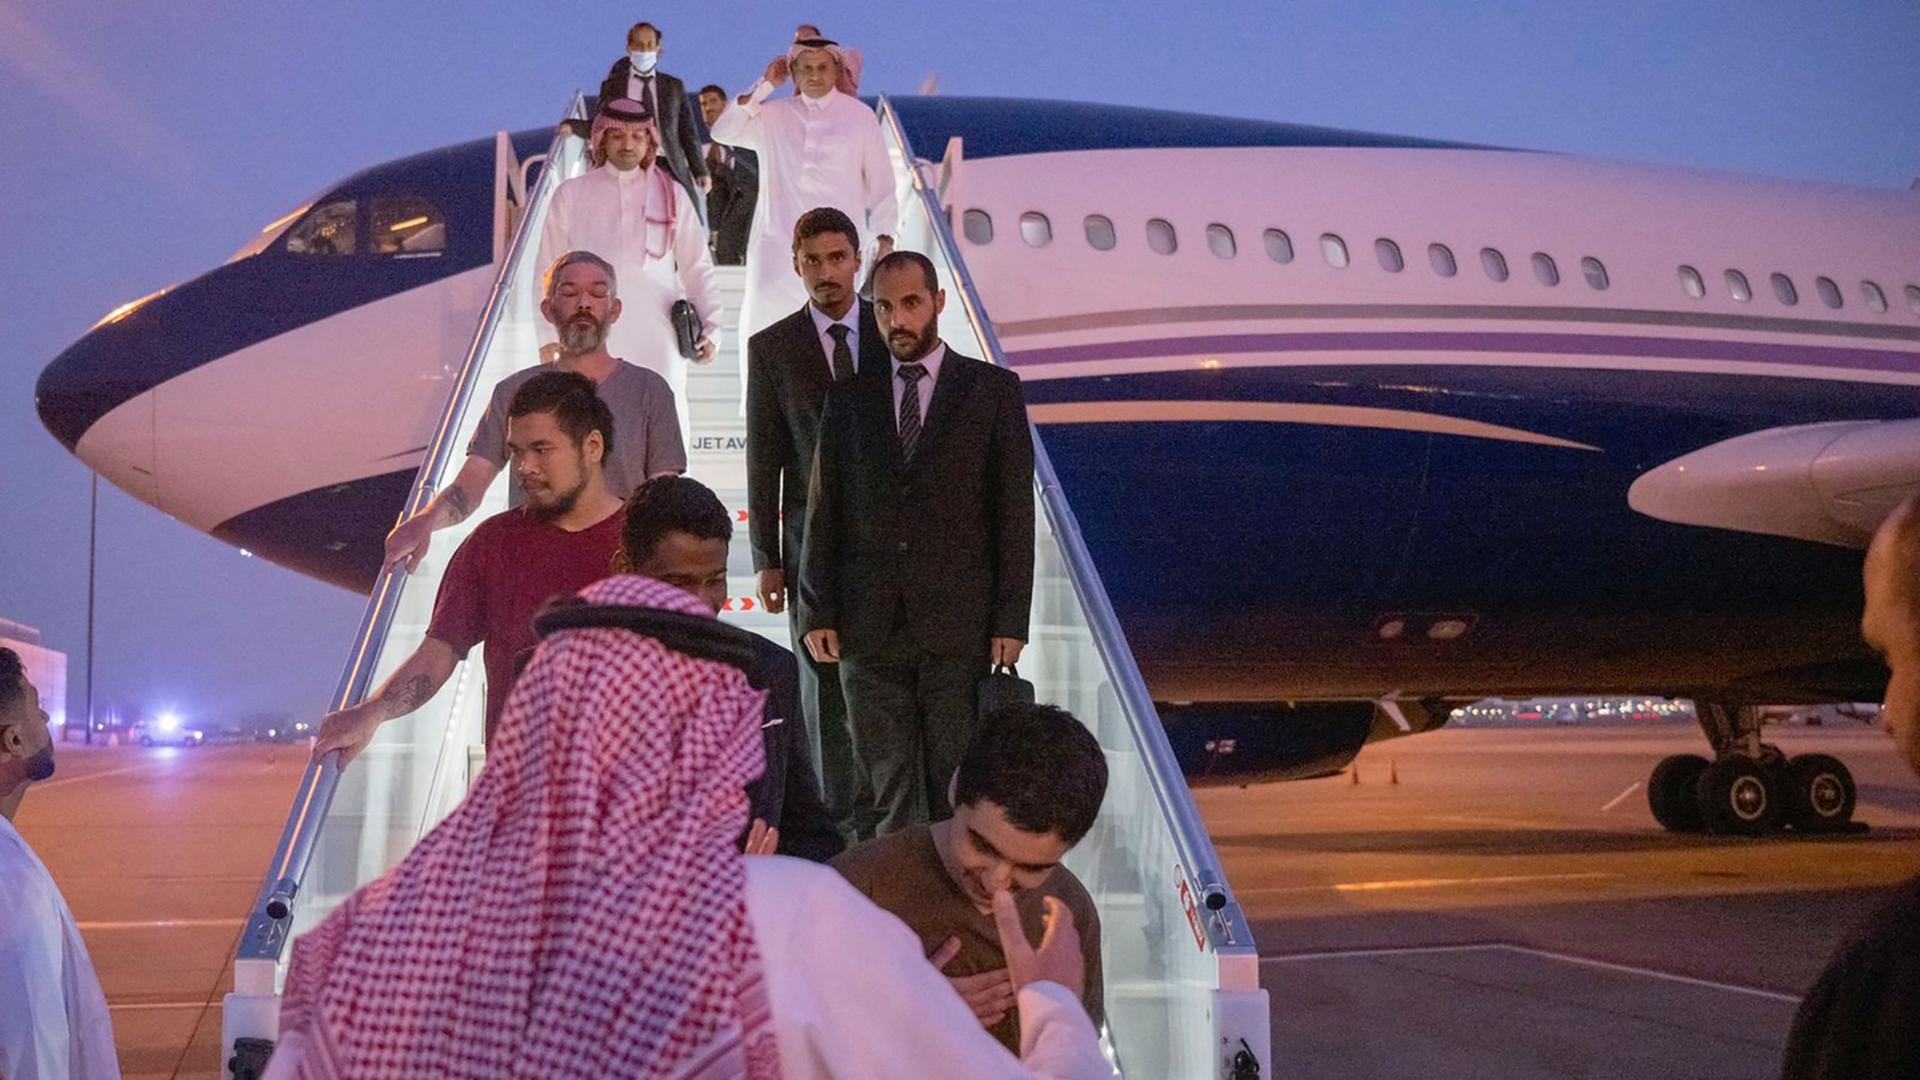 Mehrere Männer, teils in Anzügen, teils leger gekleidet, kommen die Treppe aus einem Flugzeug runter. Unten steht ein Mann mit traditioneller saudi-arabischer Kleidung und Kopftuch. Man sieht ihn von hinten.